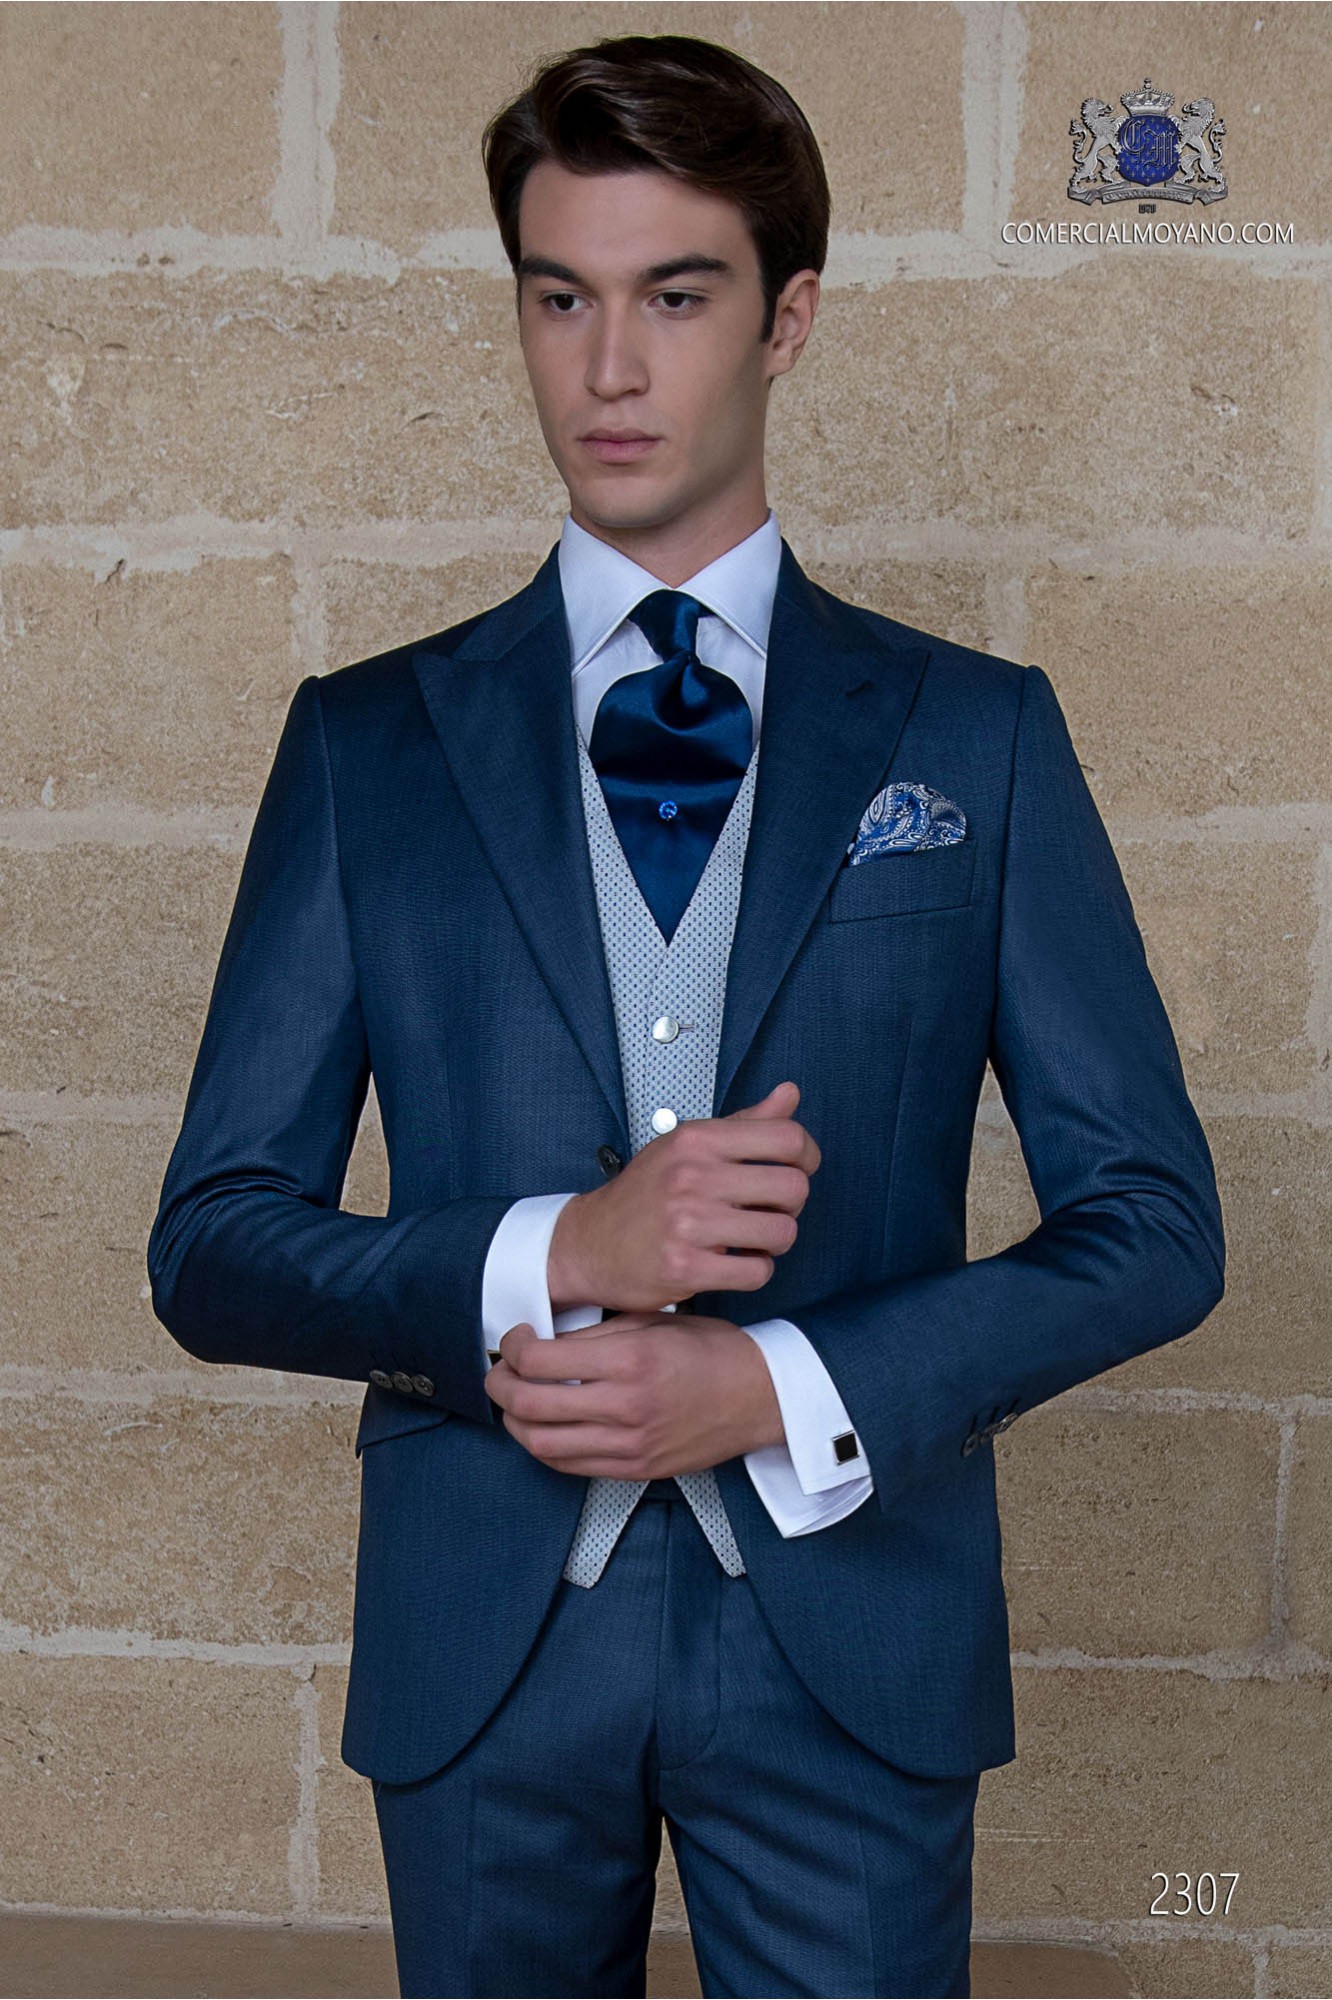 Traje azul royal elegante corte italiano “Slim” modelo: 2307 Mario Moyano colección Gentleman